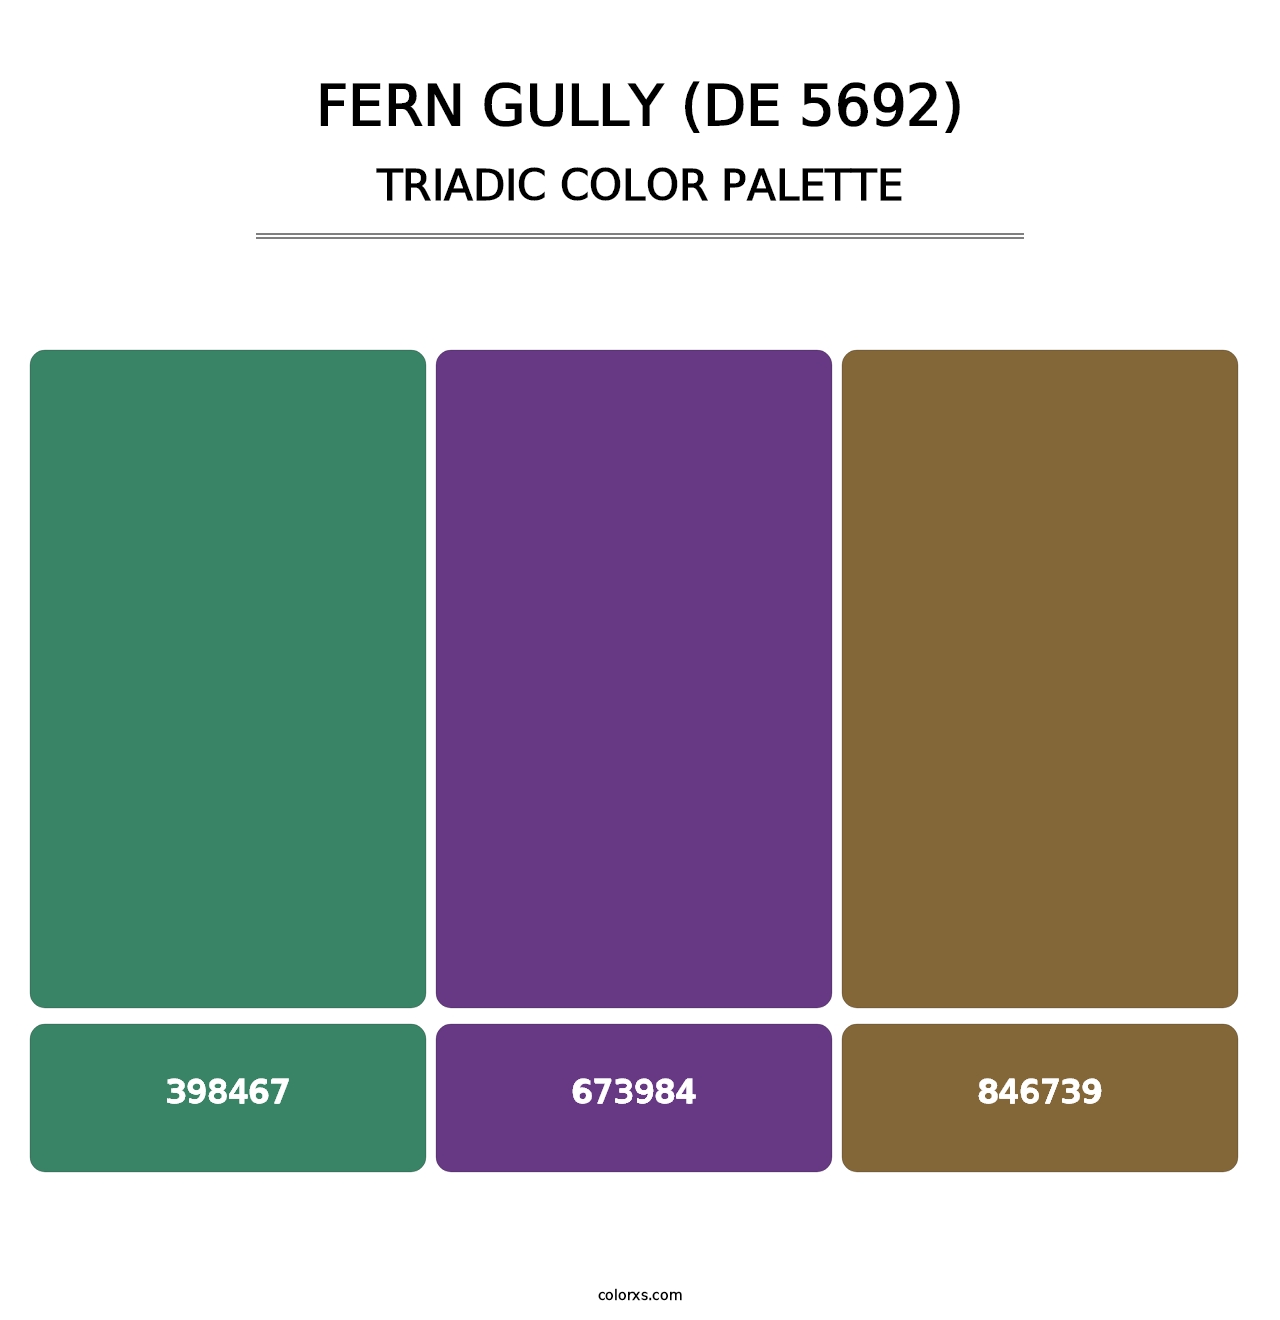 Fern Gully (DE 5692) - Triadic Color Palette